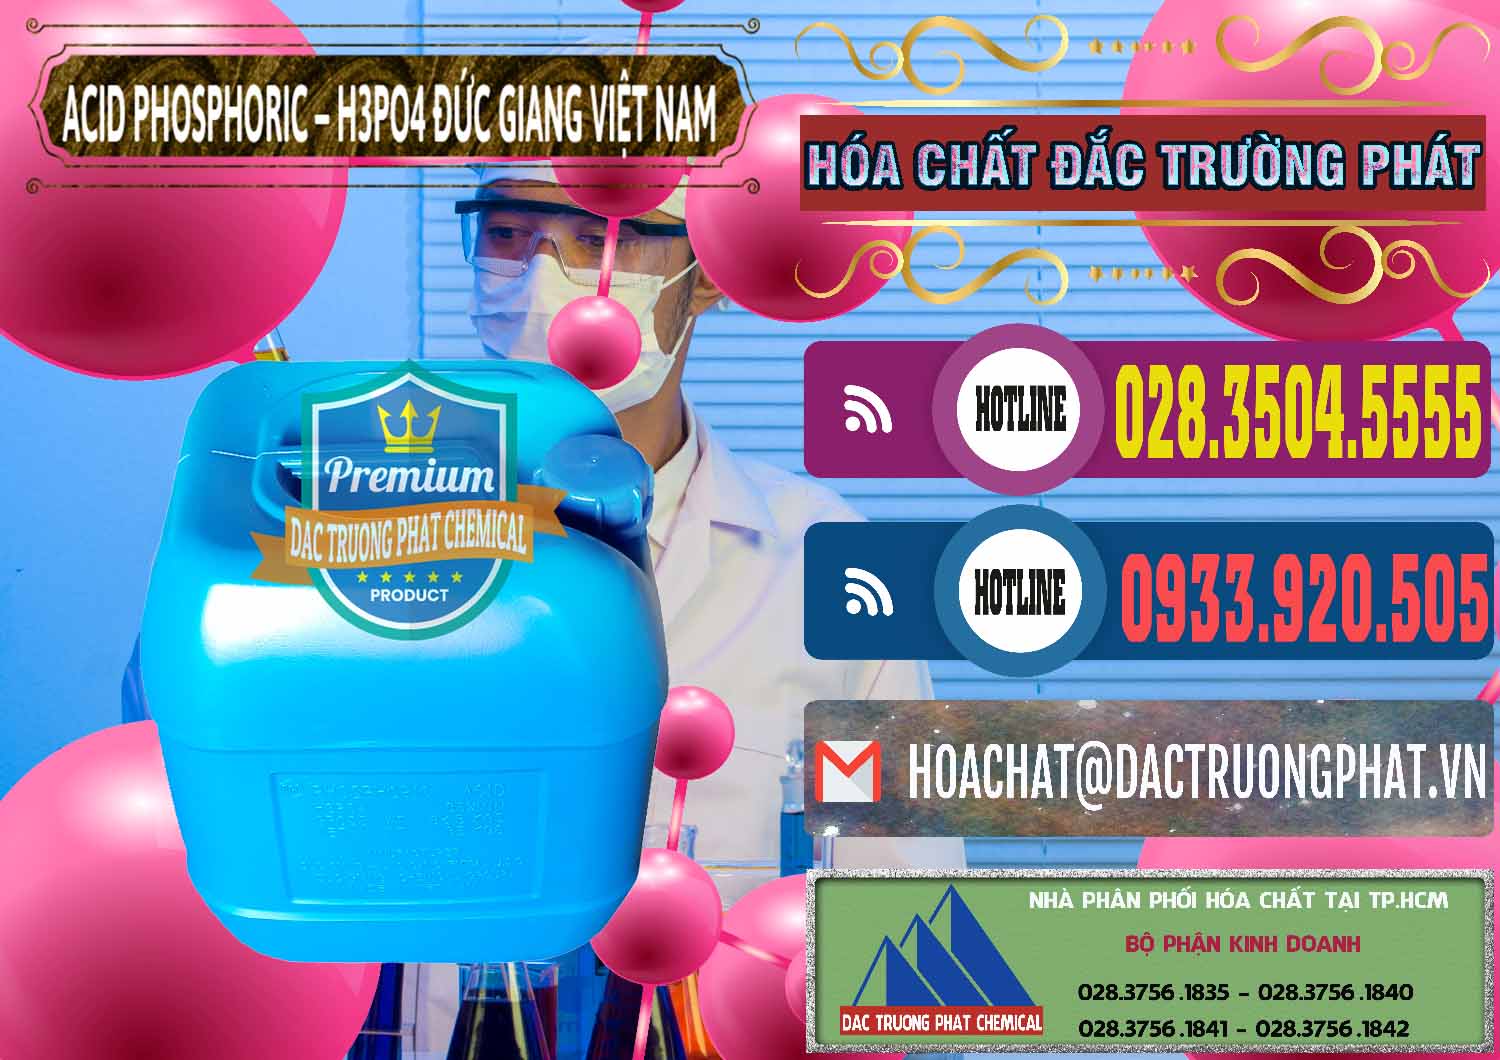 Cty chuyên phân phối và bán Axit Phosphoric - Acid Phosphoric H3PO4 85% Đức Giang Việt Nam - 0184 - Chuyên phân phối - cung cấp hóa chất tại TP.HCM - muabanhoachat.com.vn